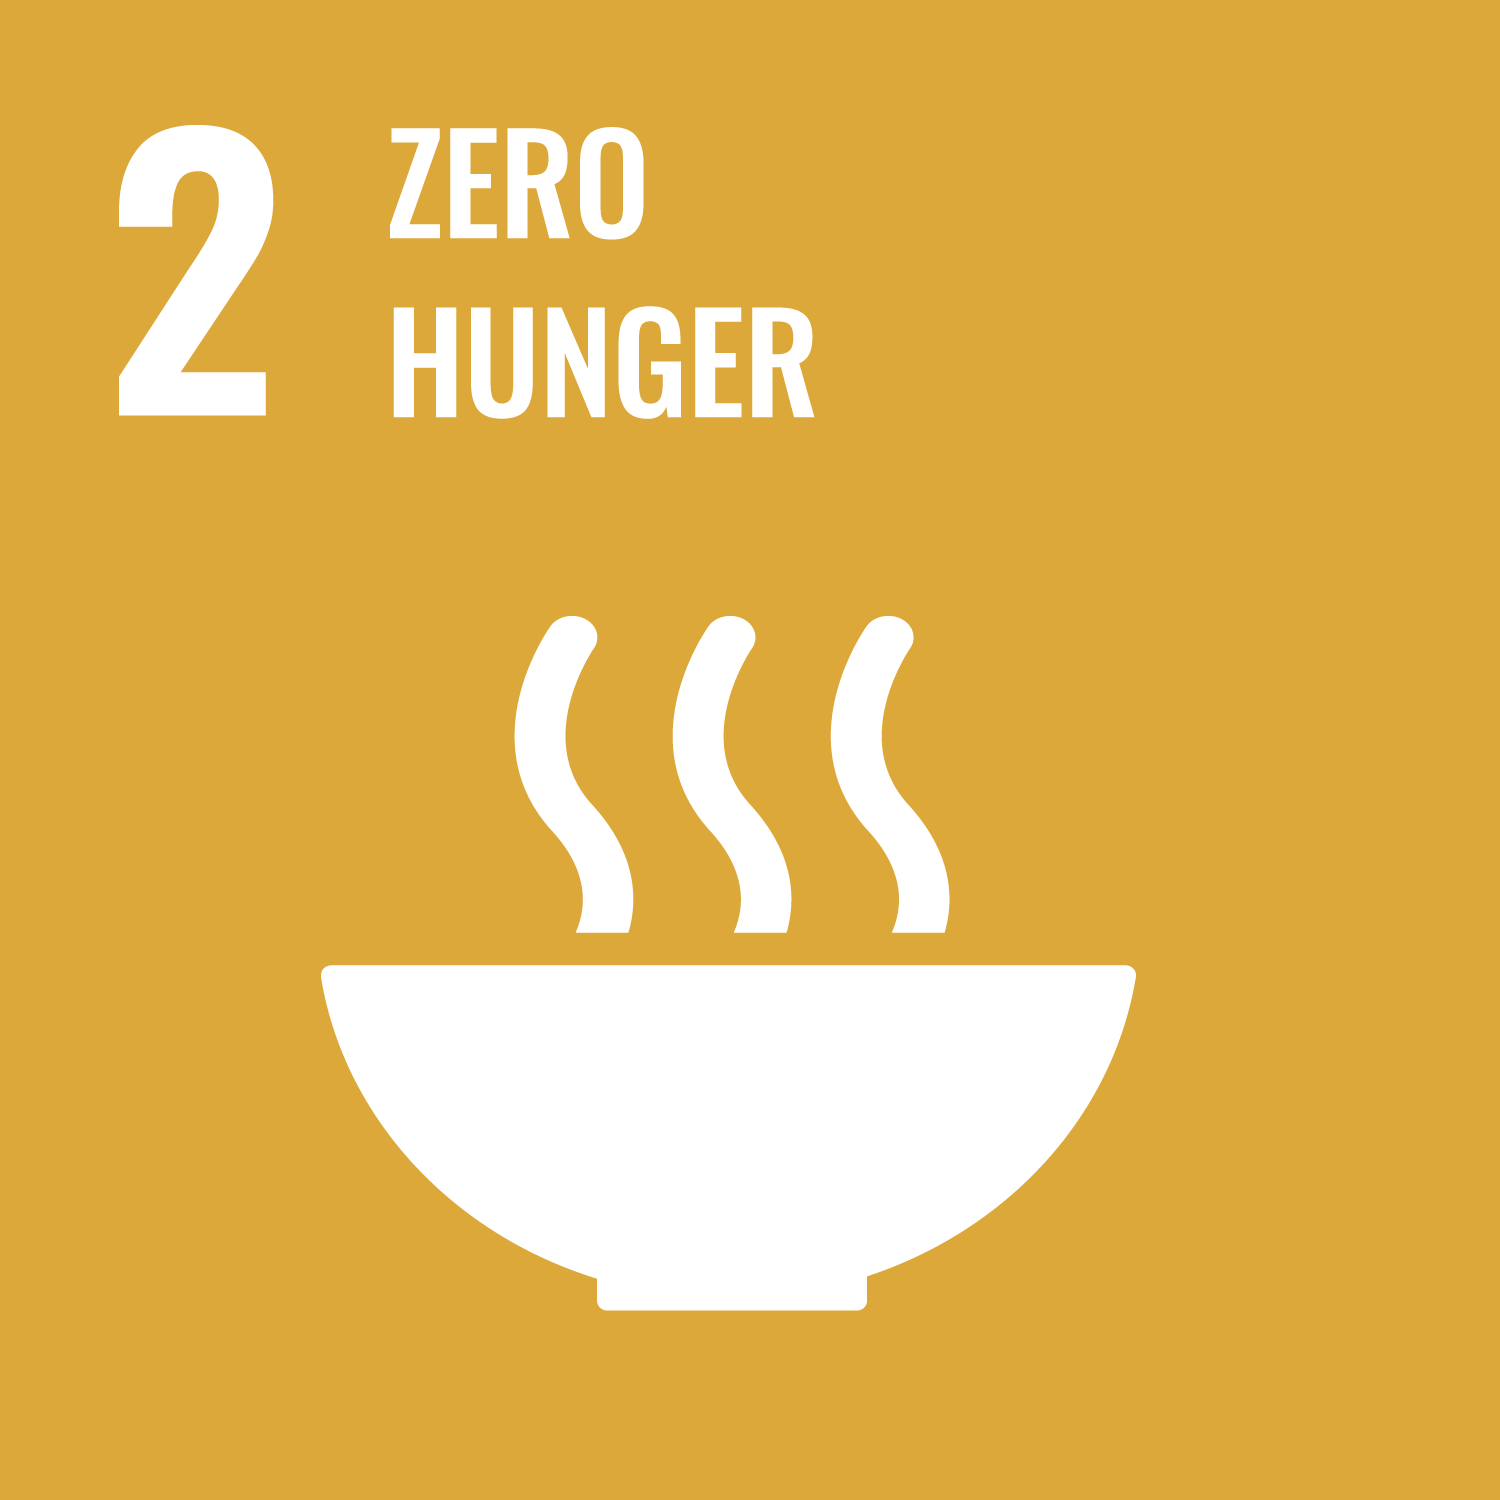 SDGs Goal 2: Zero Hunger